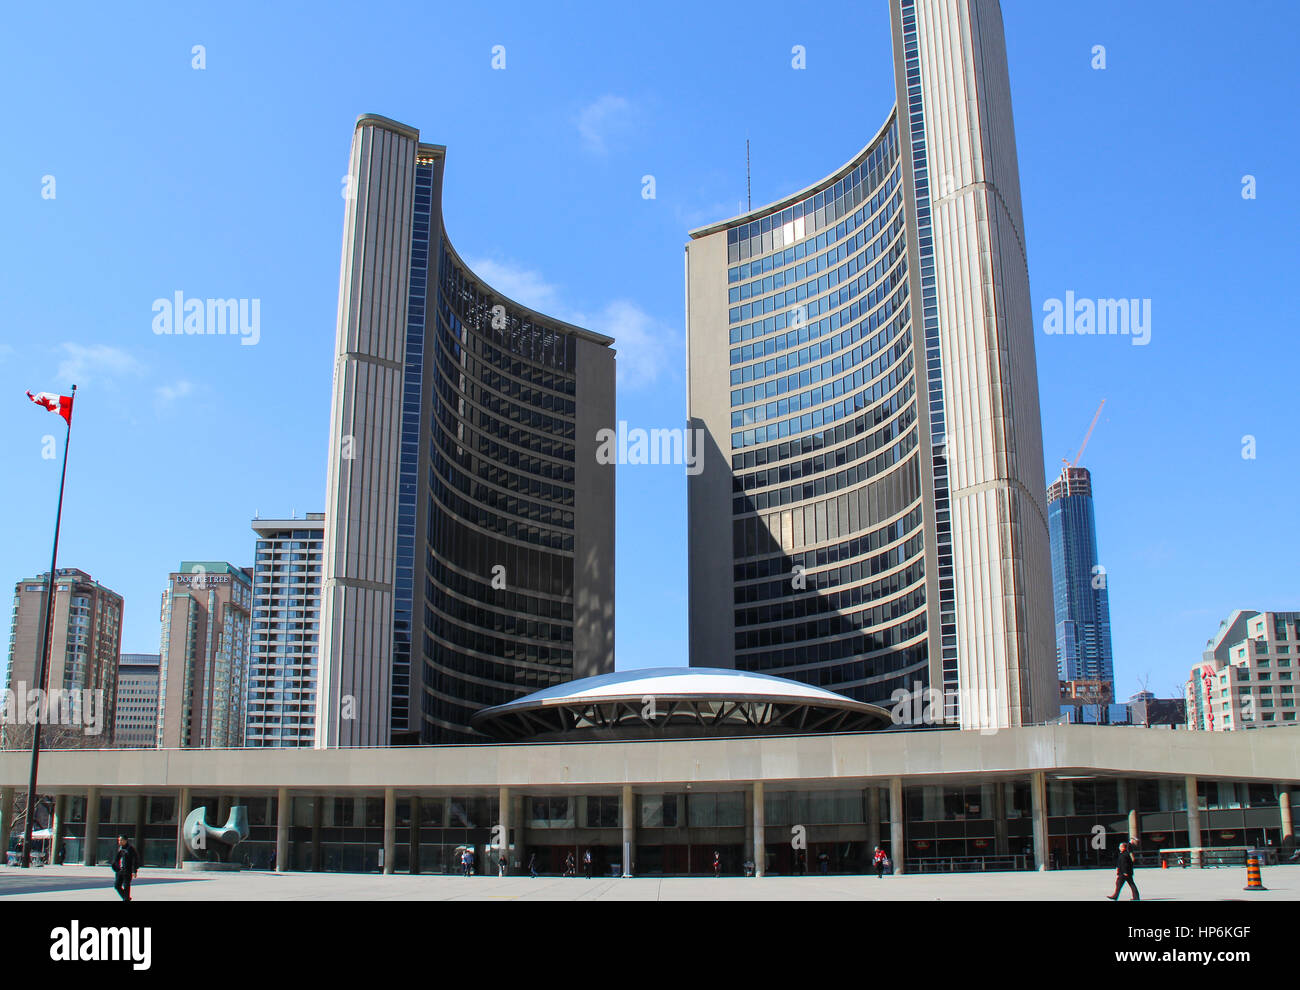 TORONTO, Canadá - 22 de abril de 2014: El Toronto City Hall, o el Nuevo Ayuntamiento, el gobierno municipal de Toronto, Ontario, Canadá, y uno de la ciudad. Foto de stock